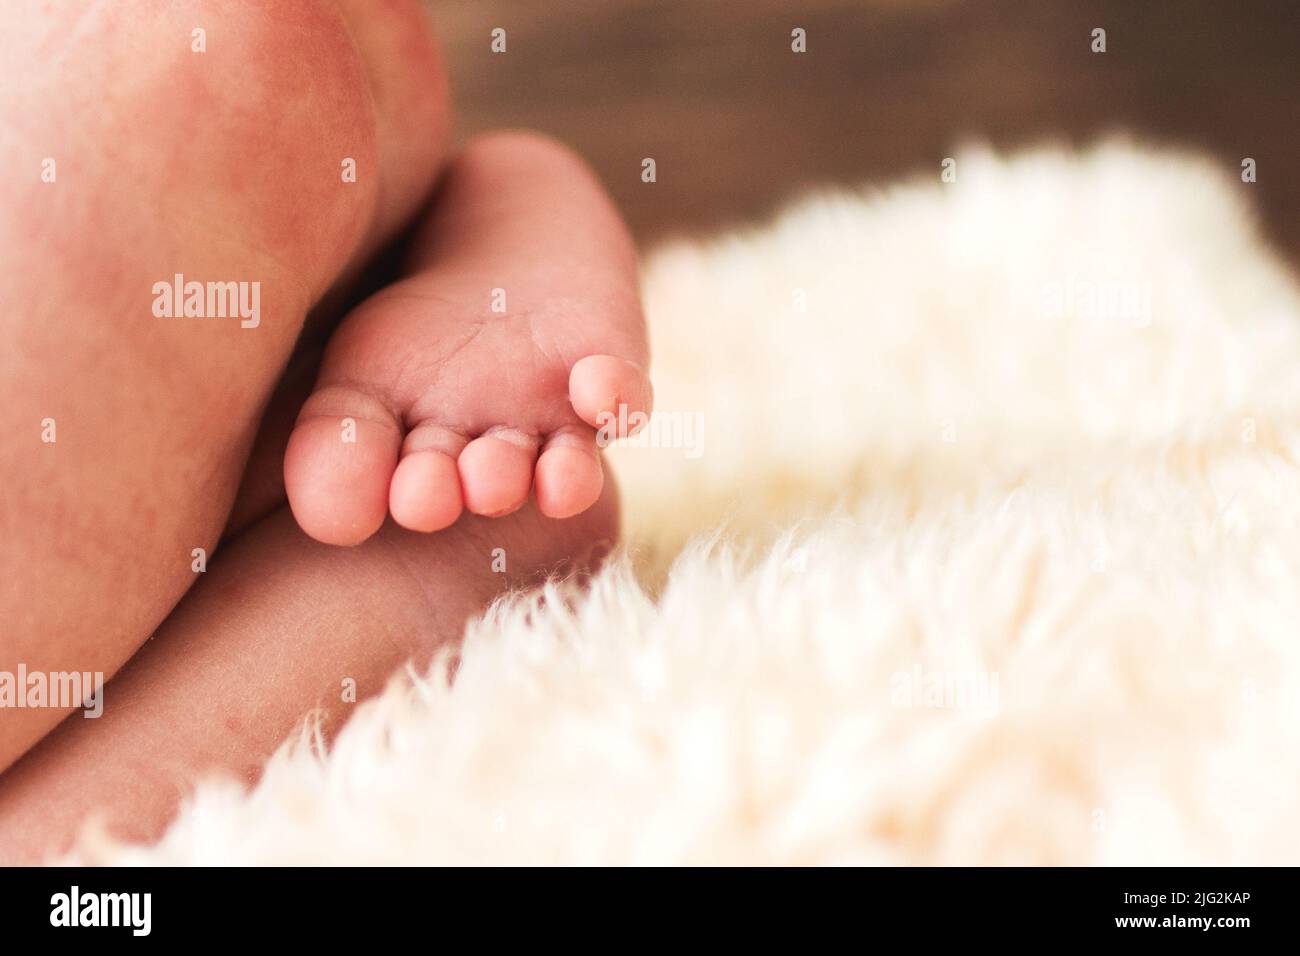 barefoot newborn baby feet. Stock Photo